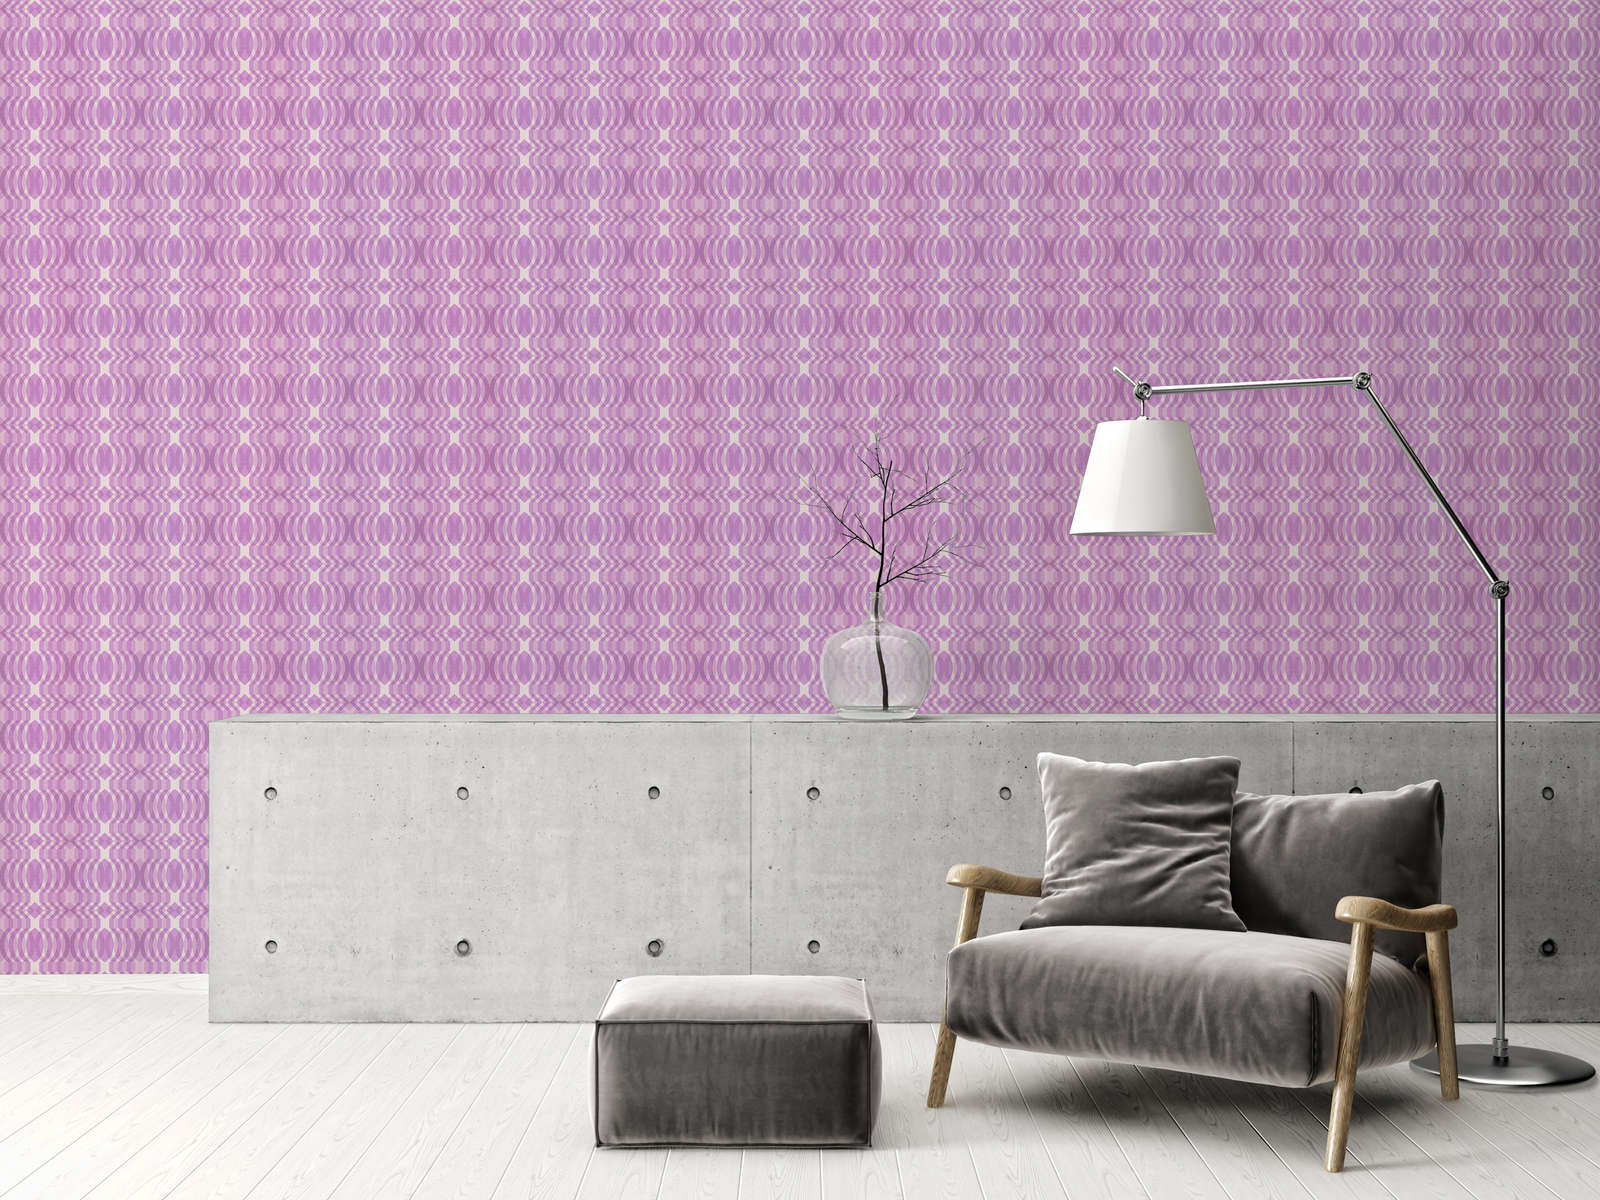             Non-woven wallpaper with geometric pattern in retro style - purple, cream, white
        